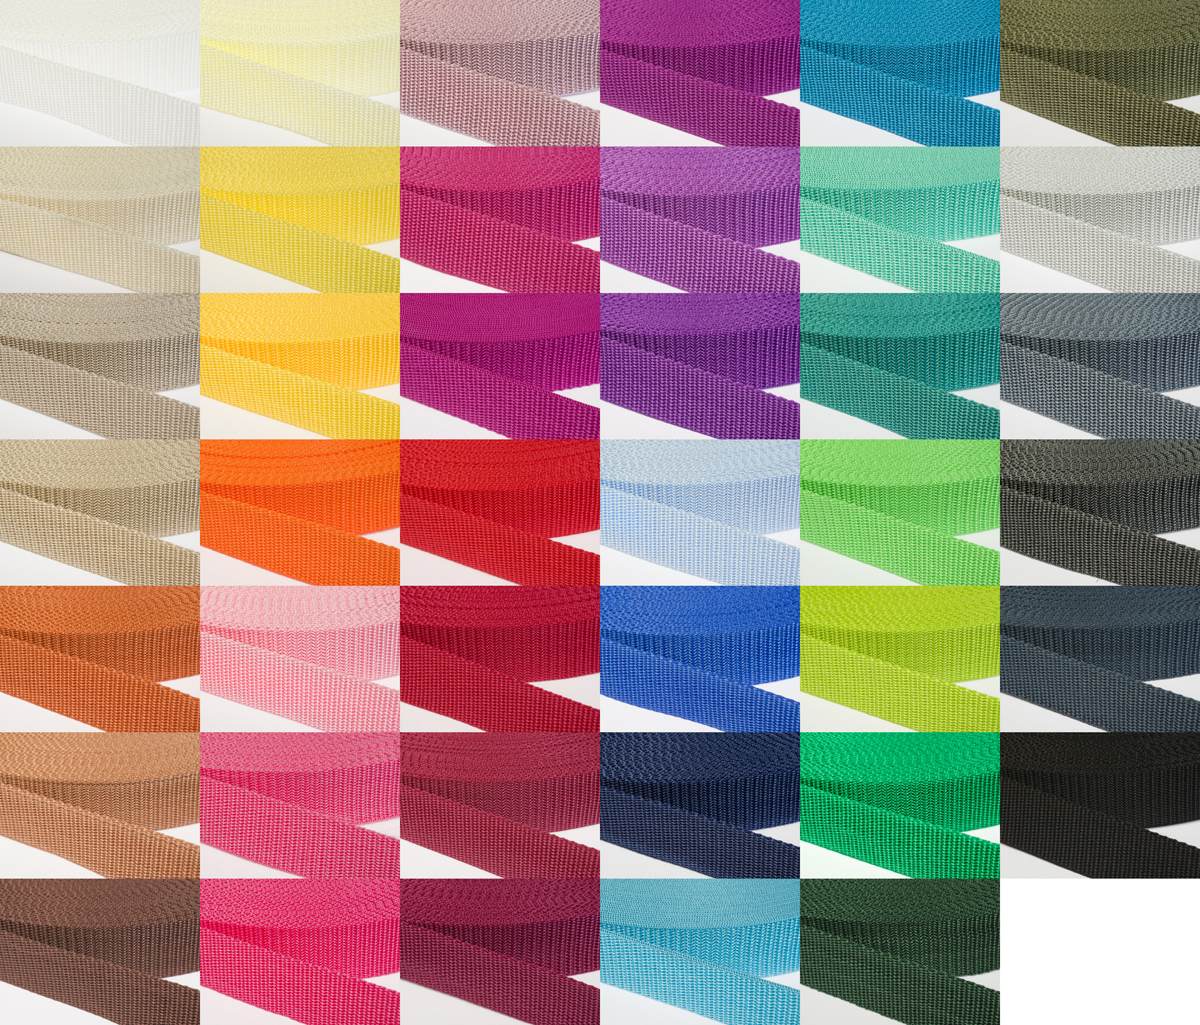 Gurtband 30mm breit aus Polypropylen in 41 Farben 41 - schwarz 50 Meter